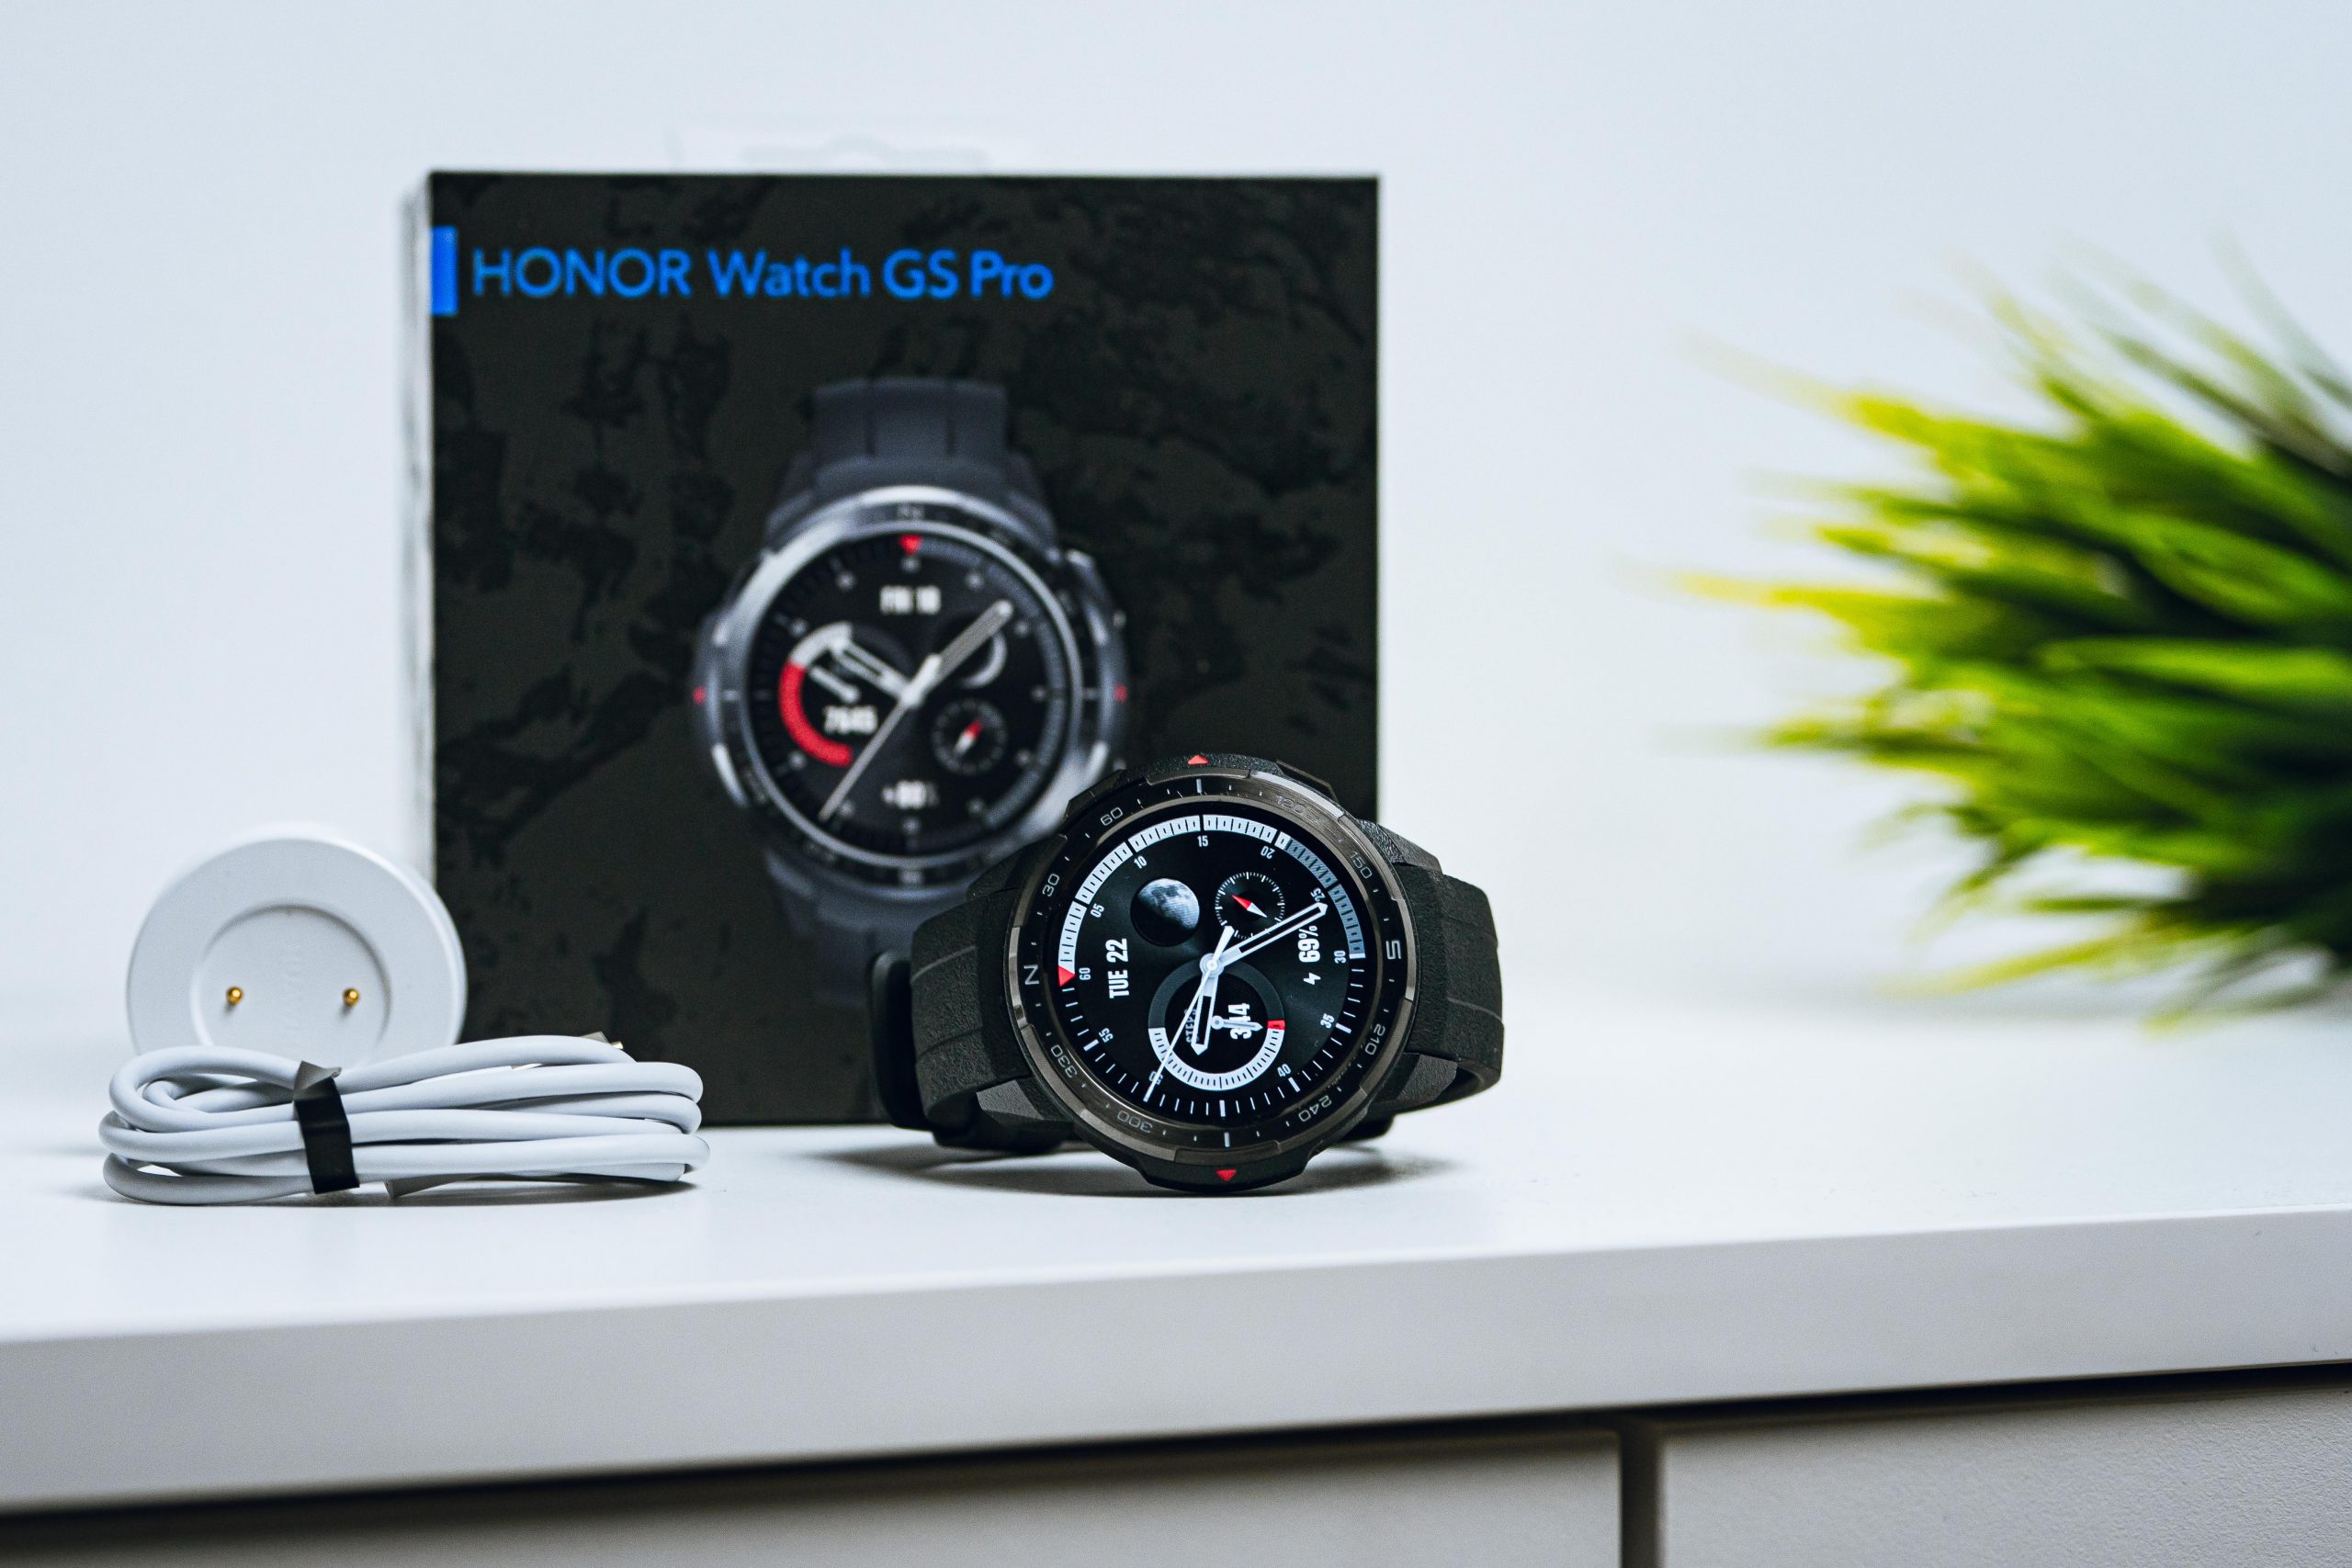 Twardy sprzęt gotowy na wszystko, czyli recenzja Honor Watch GS Pro